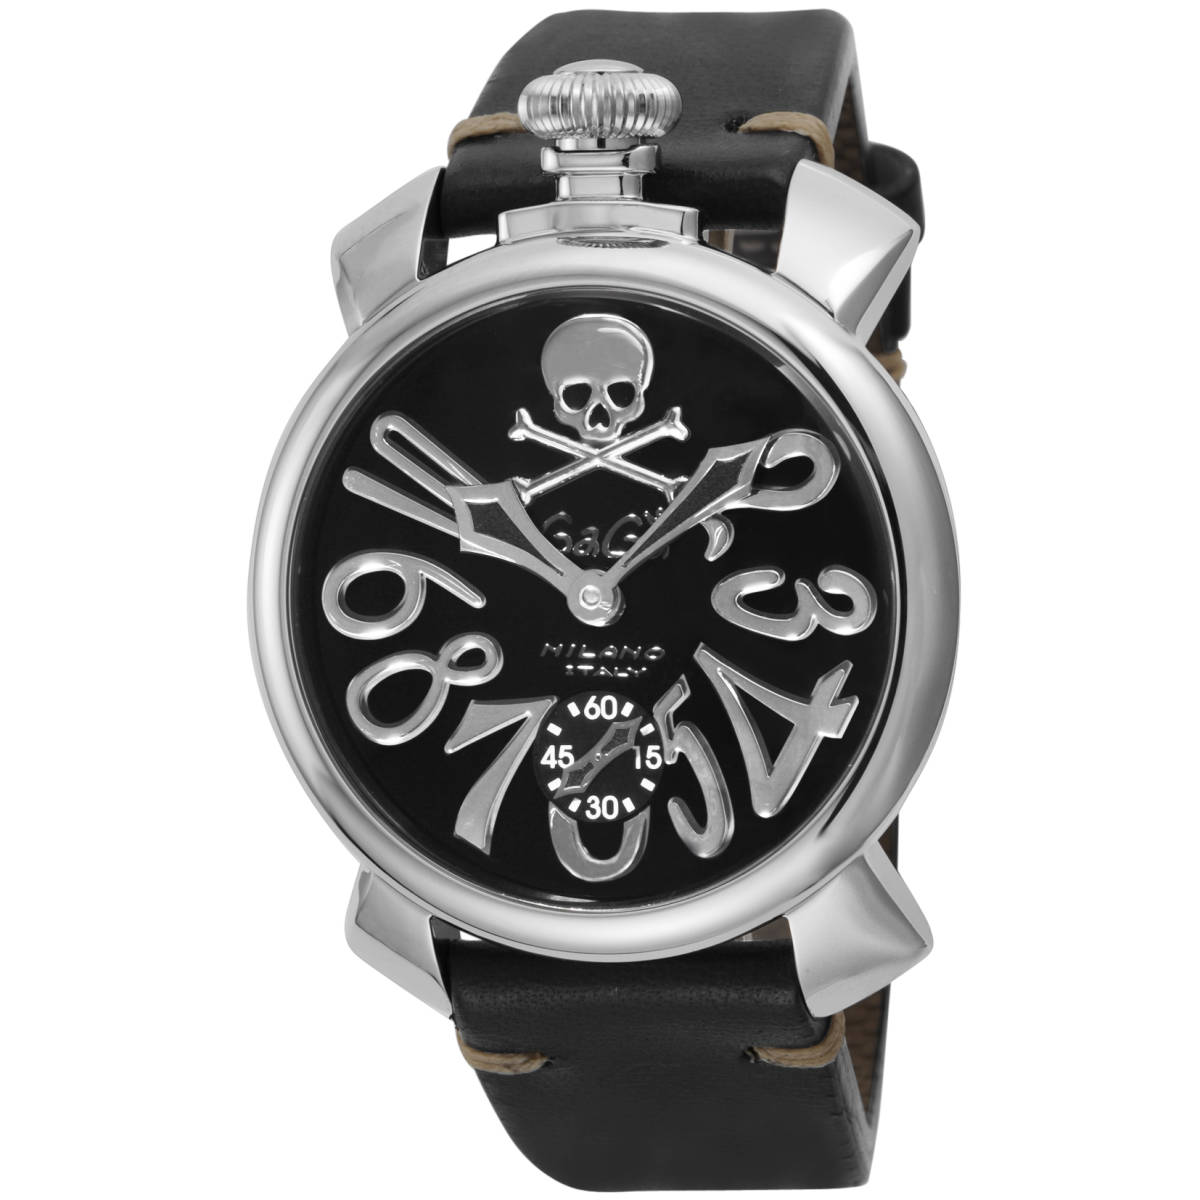 ◆GaGa MILANO ガガミラノ◆ 腕時計 時計 手巻き メンズ アウトレット 機械式 ブラック 5010ART02S-BLK マヌアーレ48MM アートコレクションのサムネイル